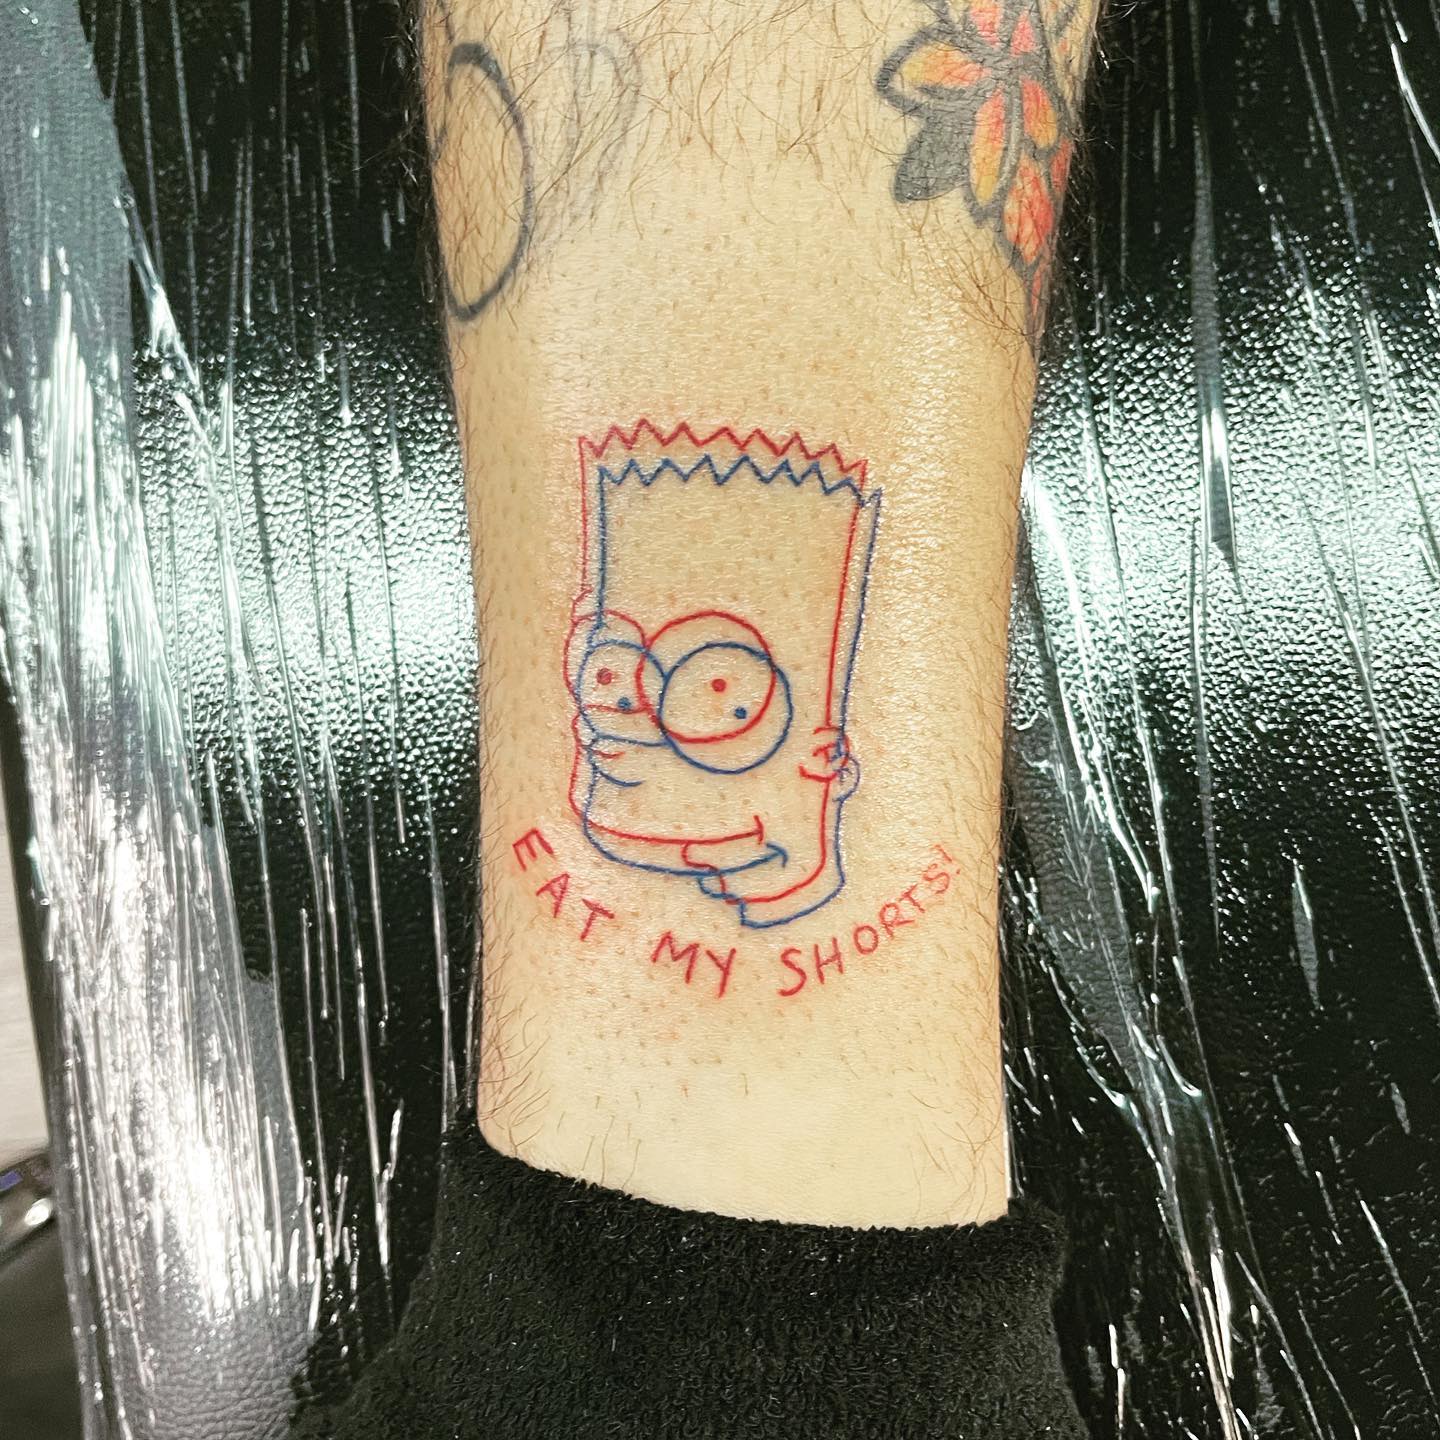 Diseño de tatuaje de los Simpsons.